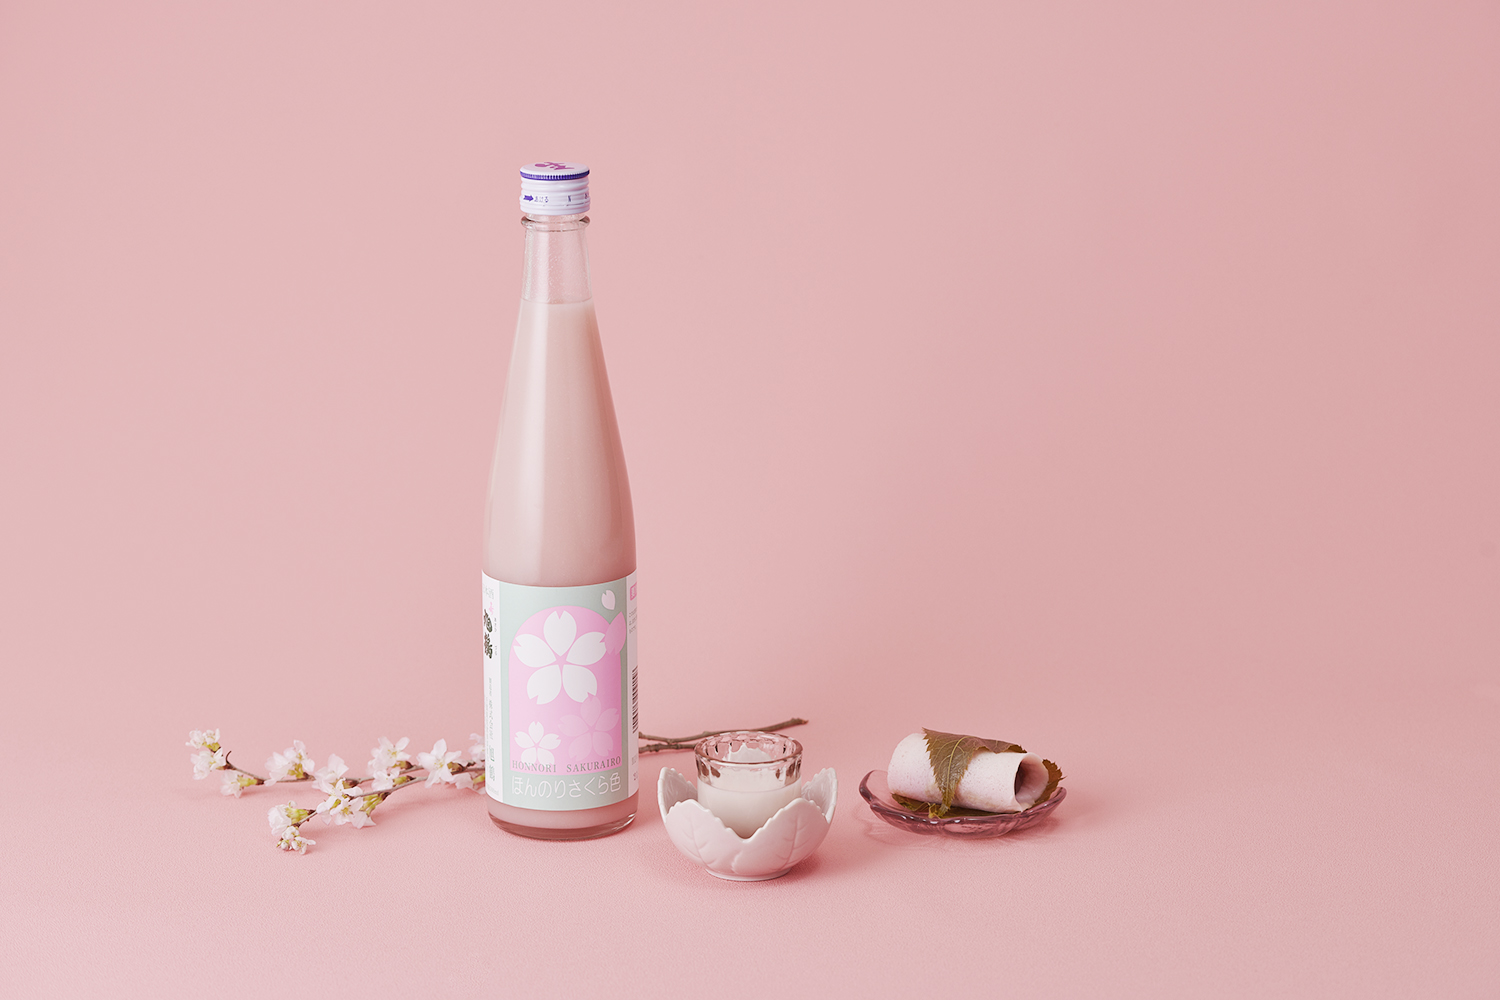 「CHIBA SAKE.com」3月25日からは春酒特集がスタート！期間限定でご購入いただいたみなさまに桜の香りのサシェをプレゼント